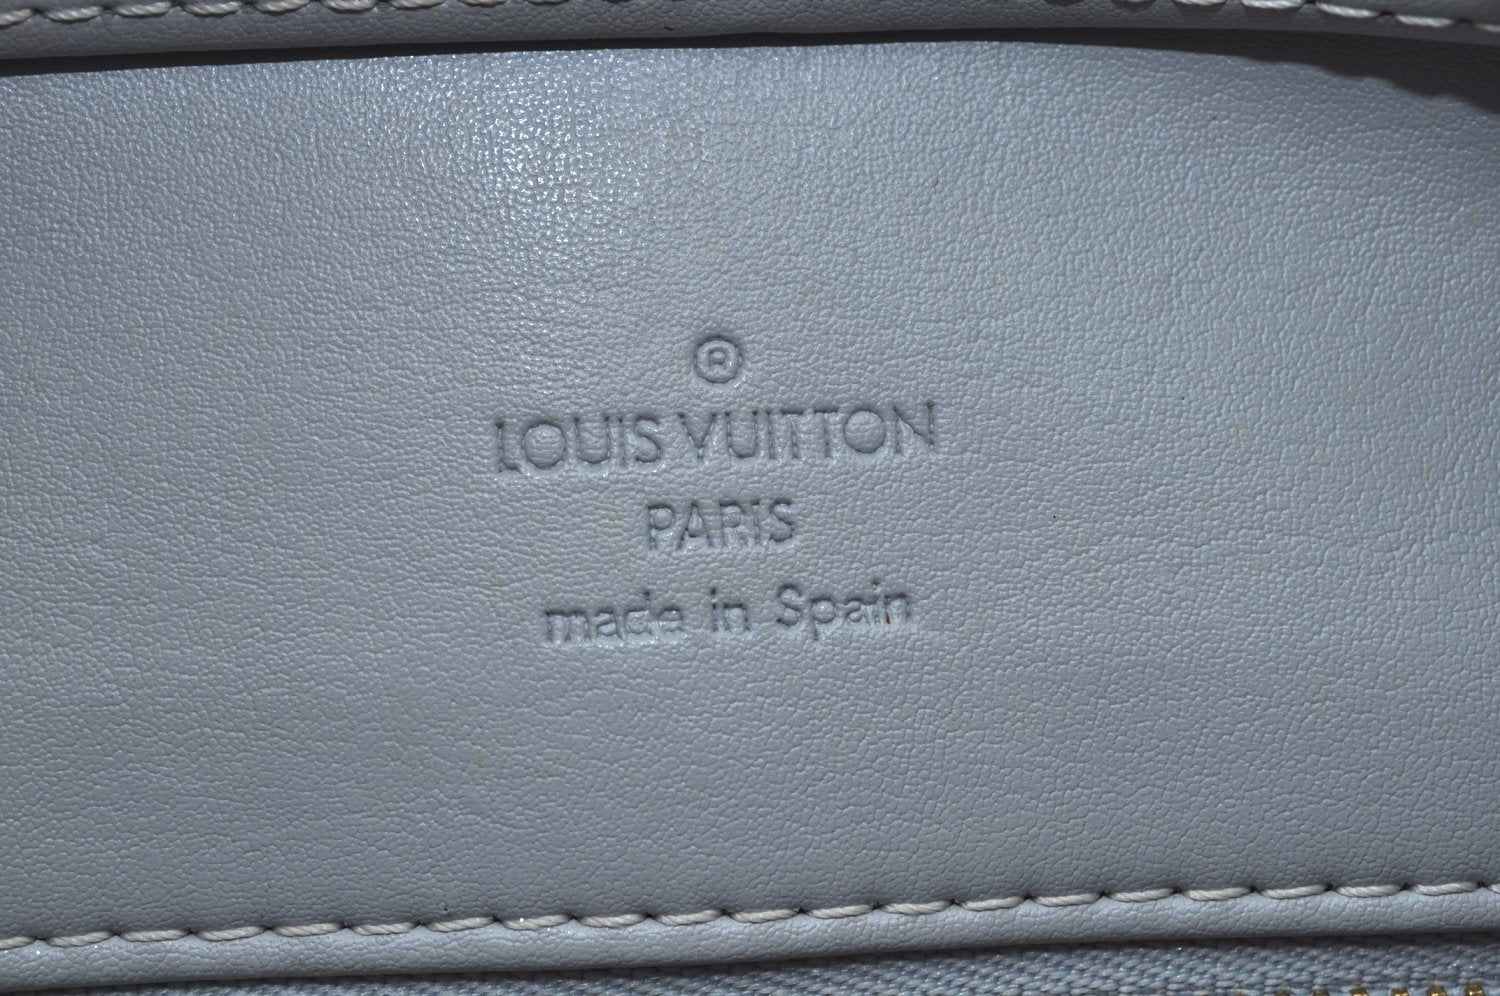 Authentic Louis Vuitton Vernis Houston Shoulder Hand Bag Yellow M91053 LV L0018